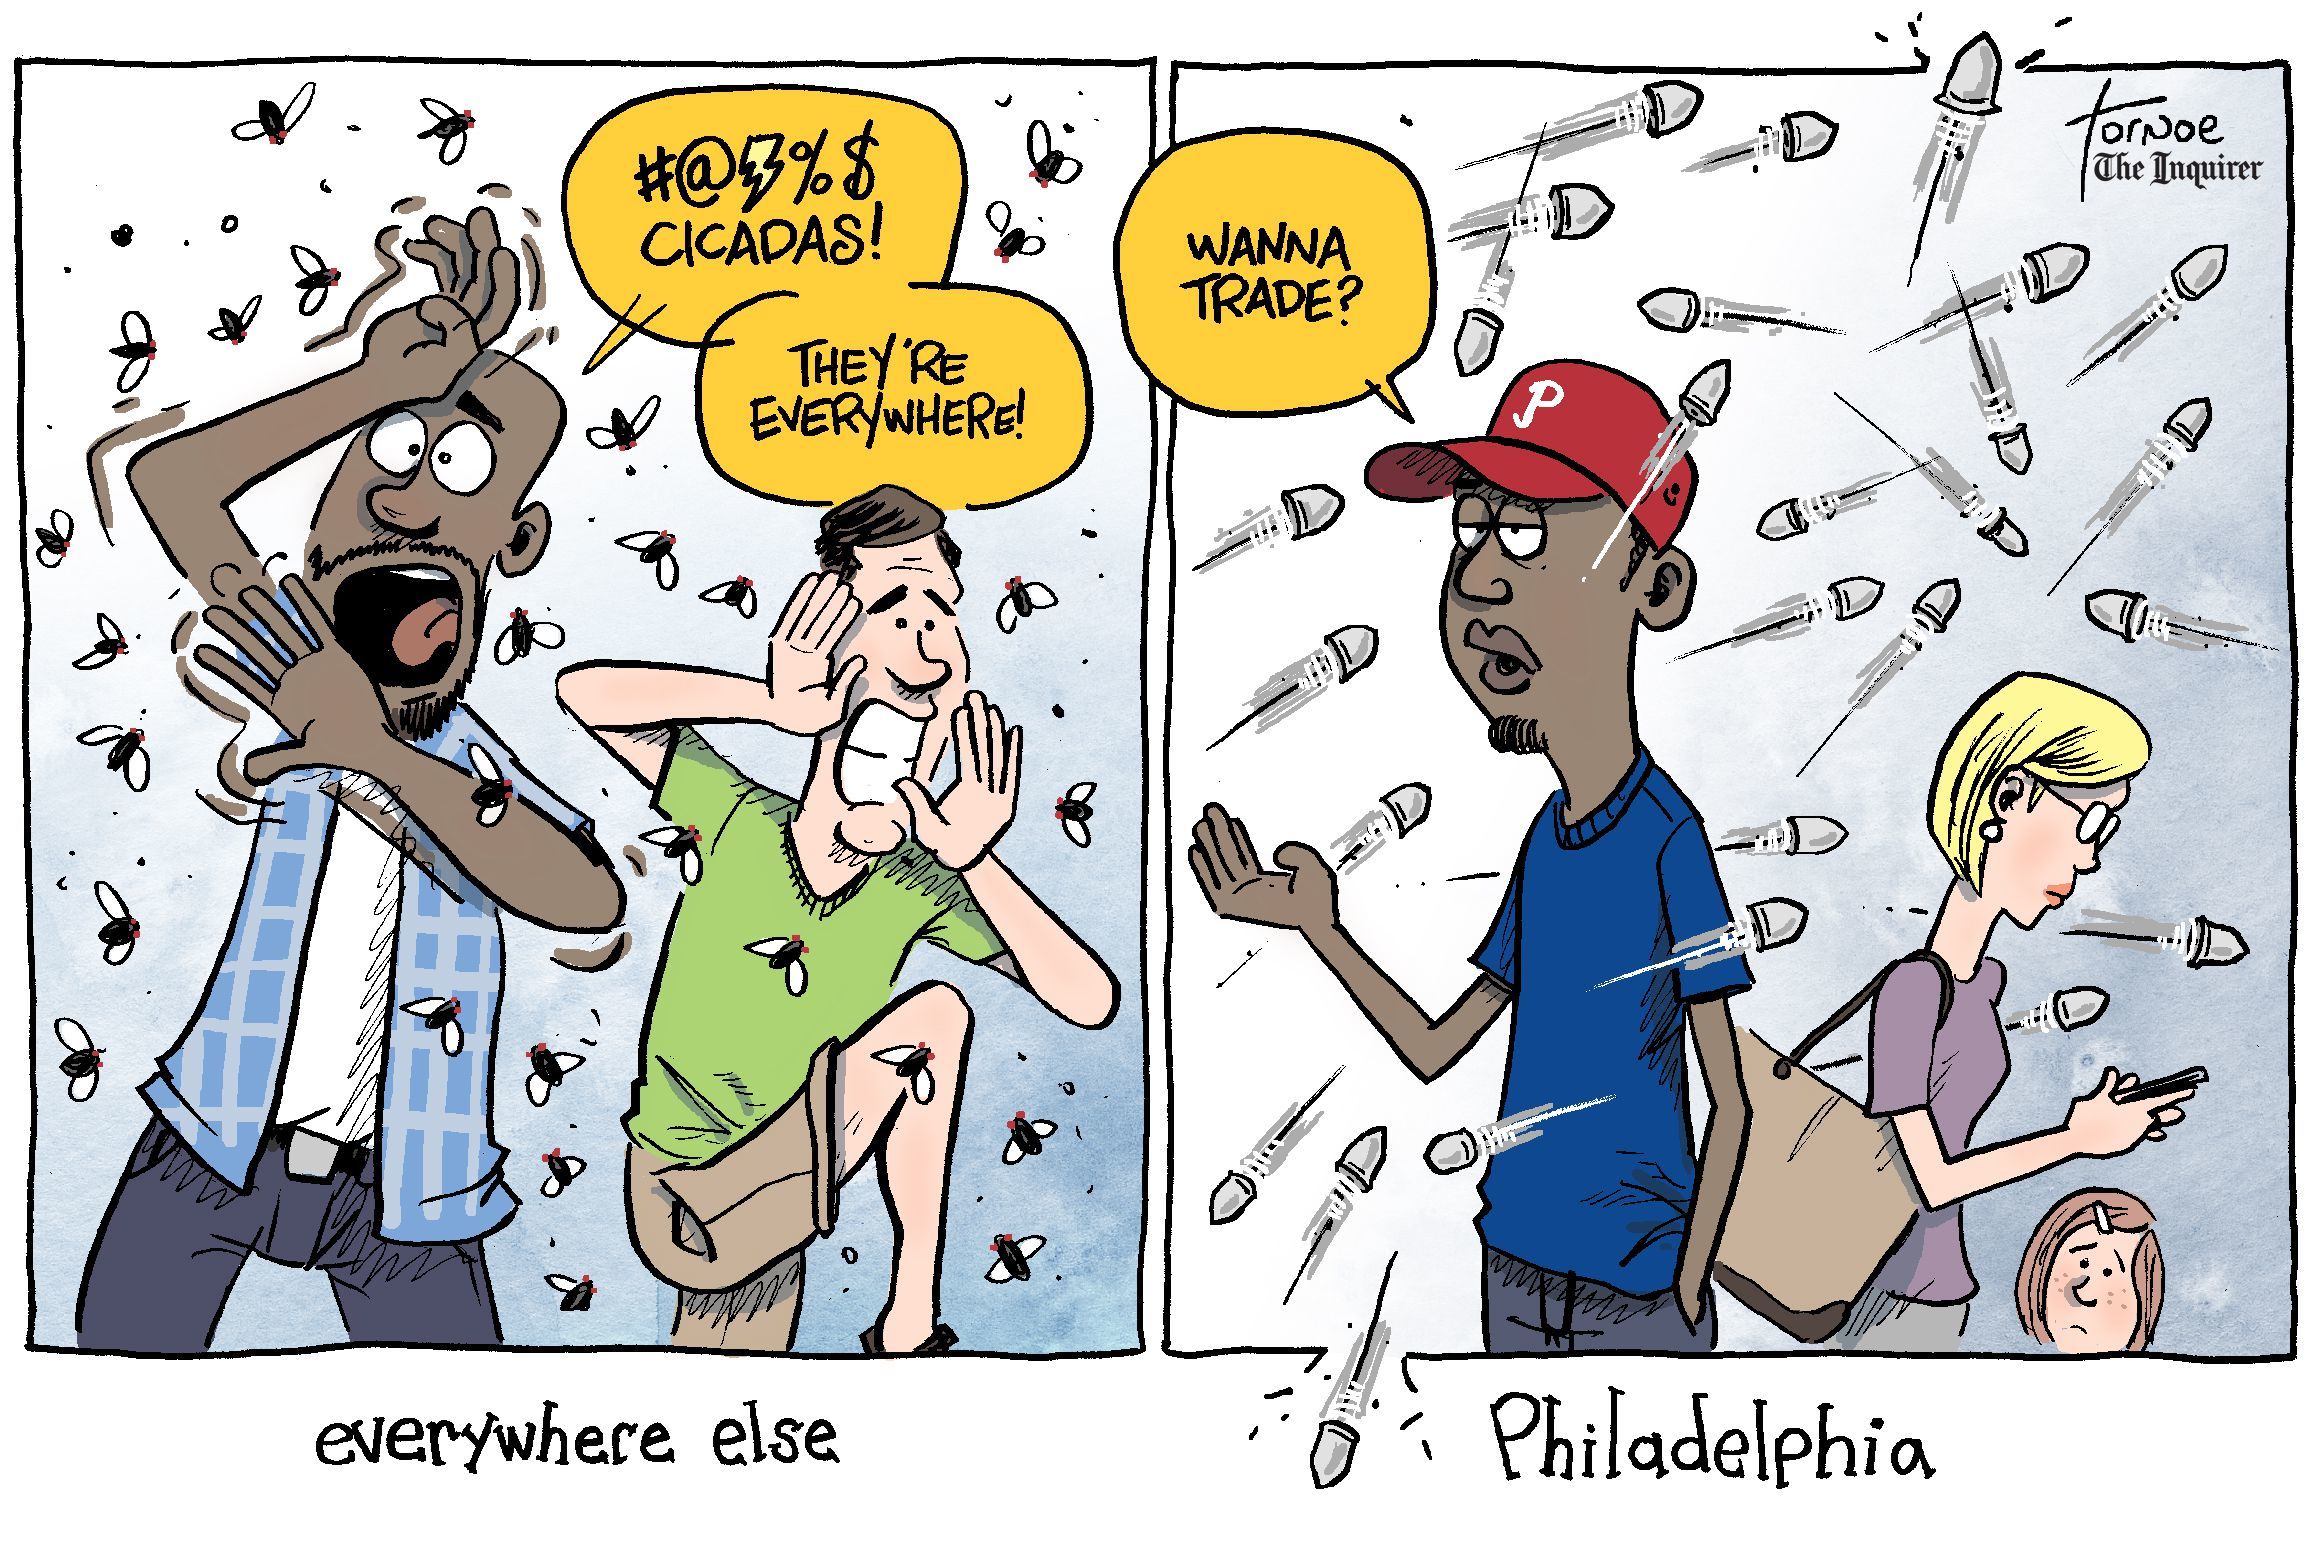 racial discrimination in schools cartoon